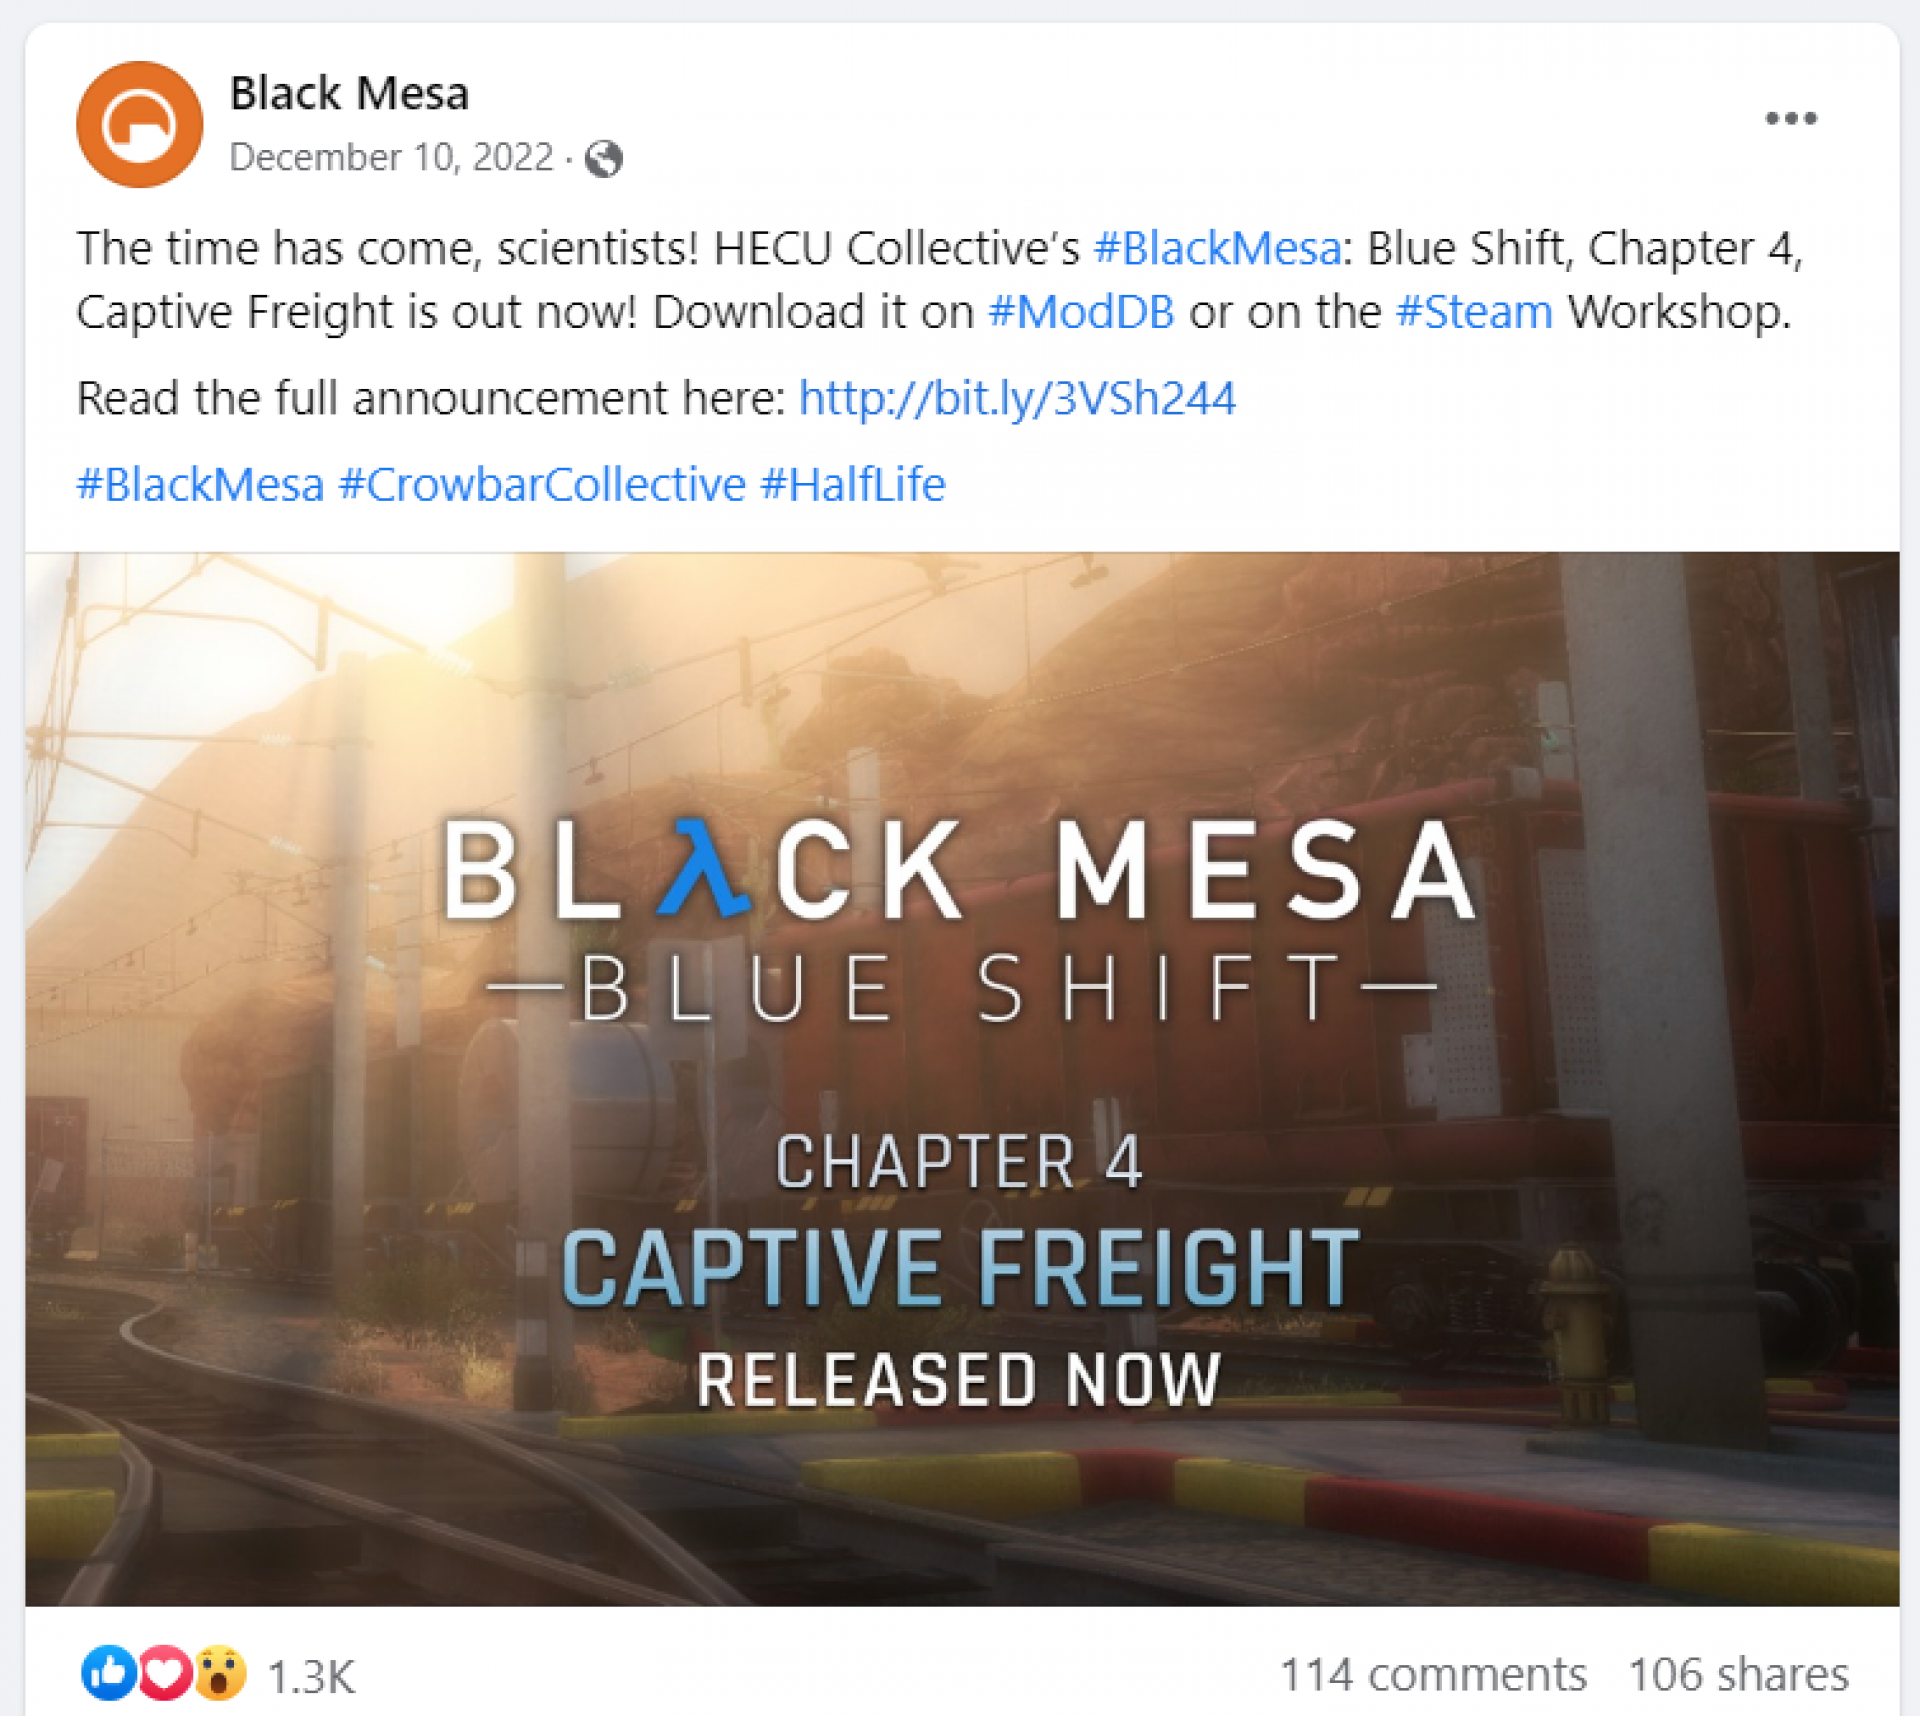 Vega Digital Awards Winner - Black Mesa Social Media Accounts, Infernozilla